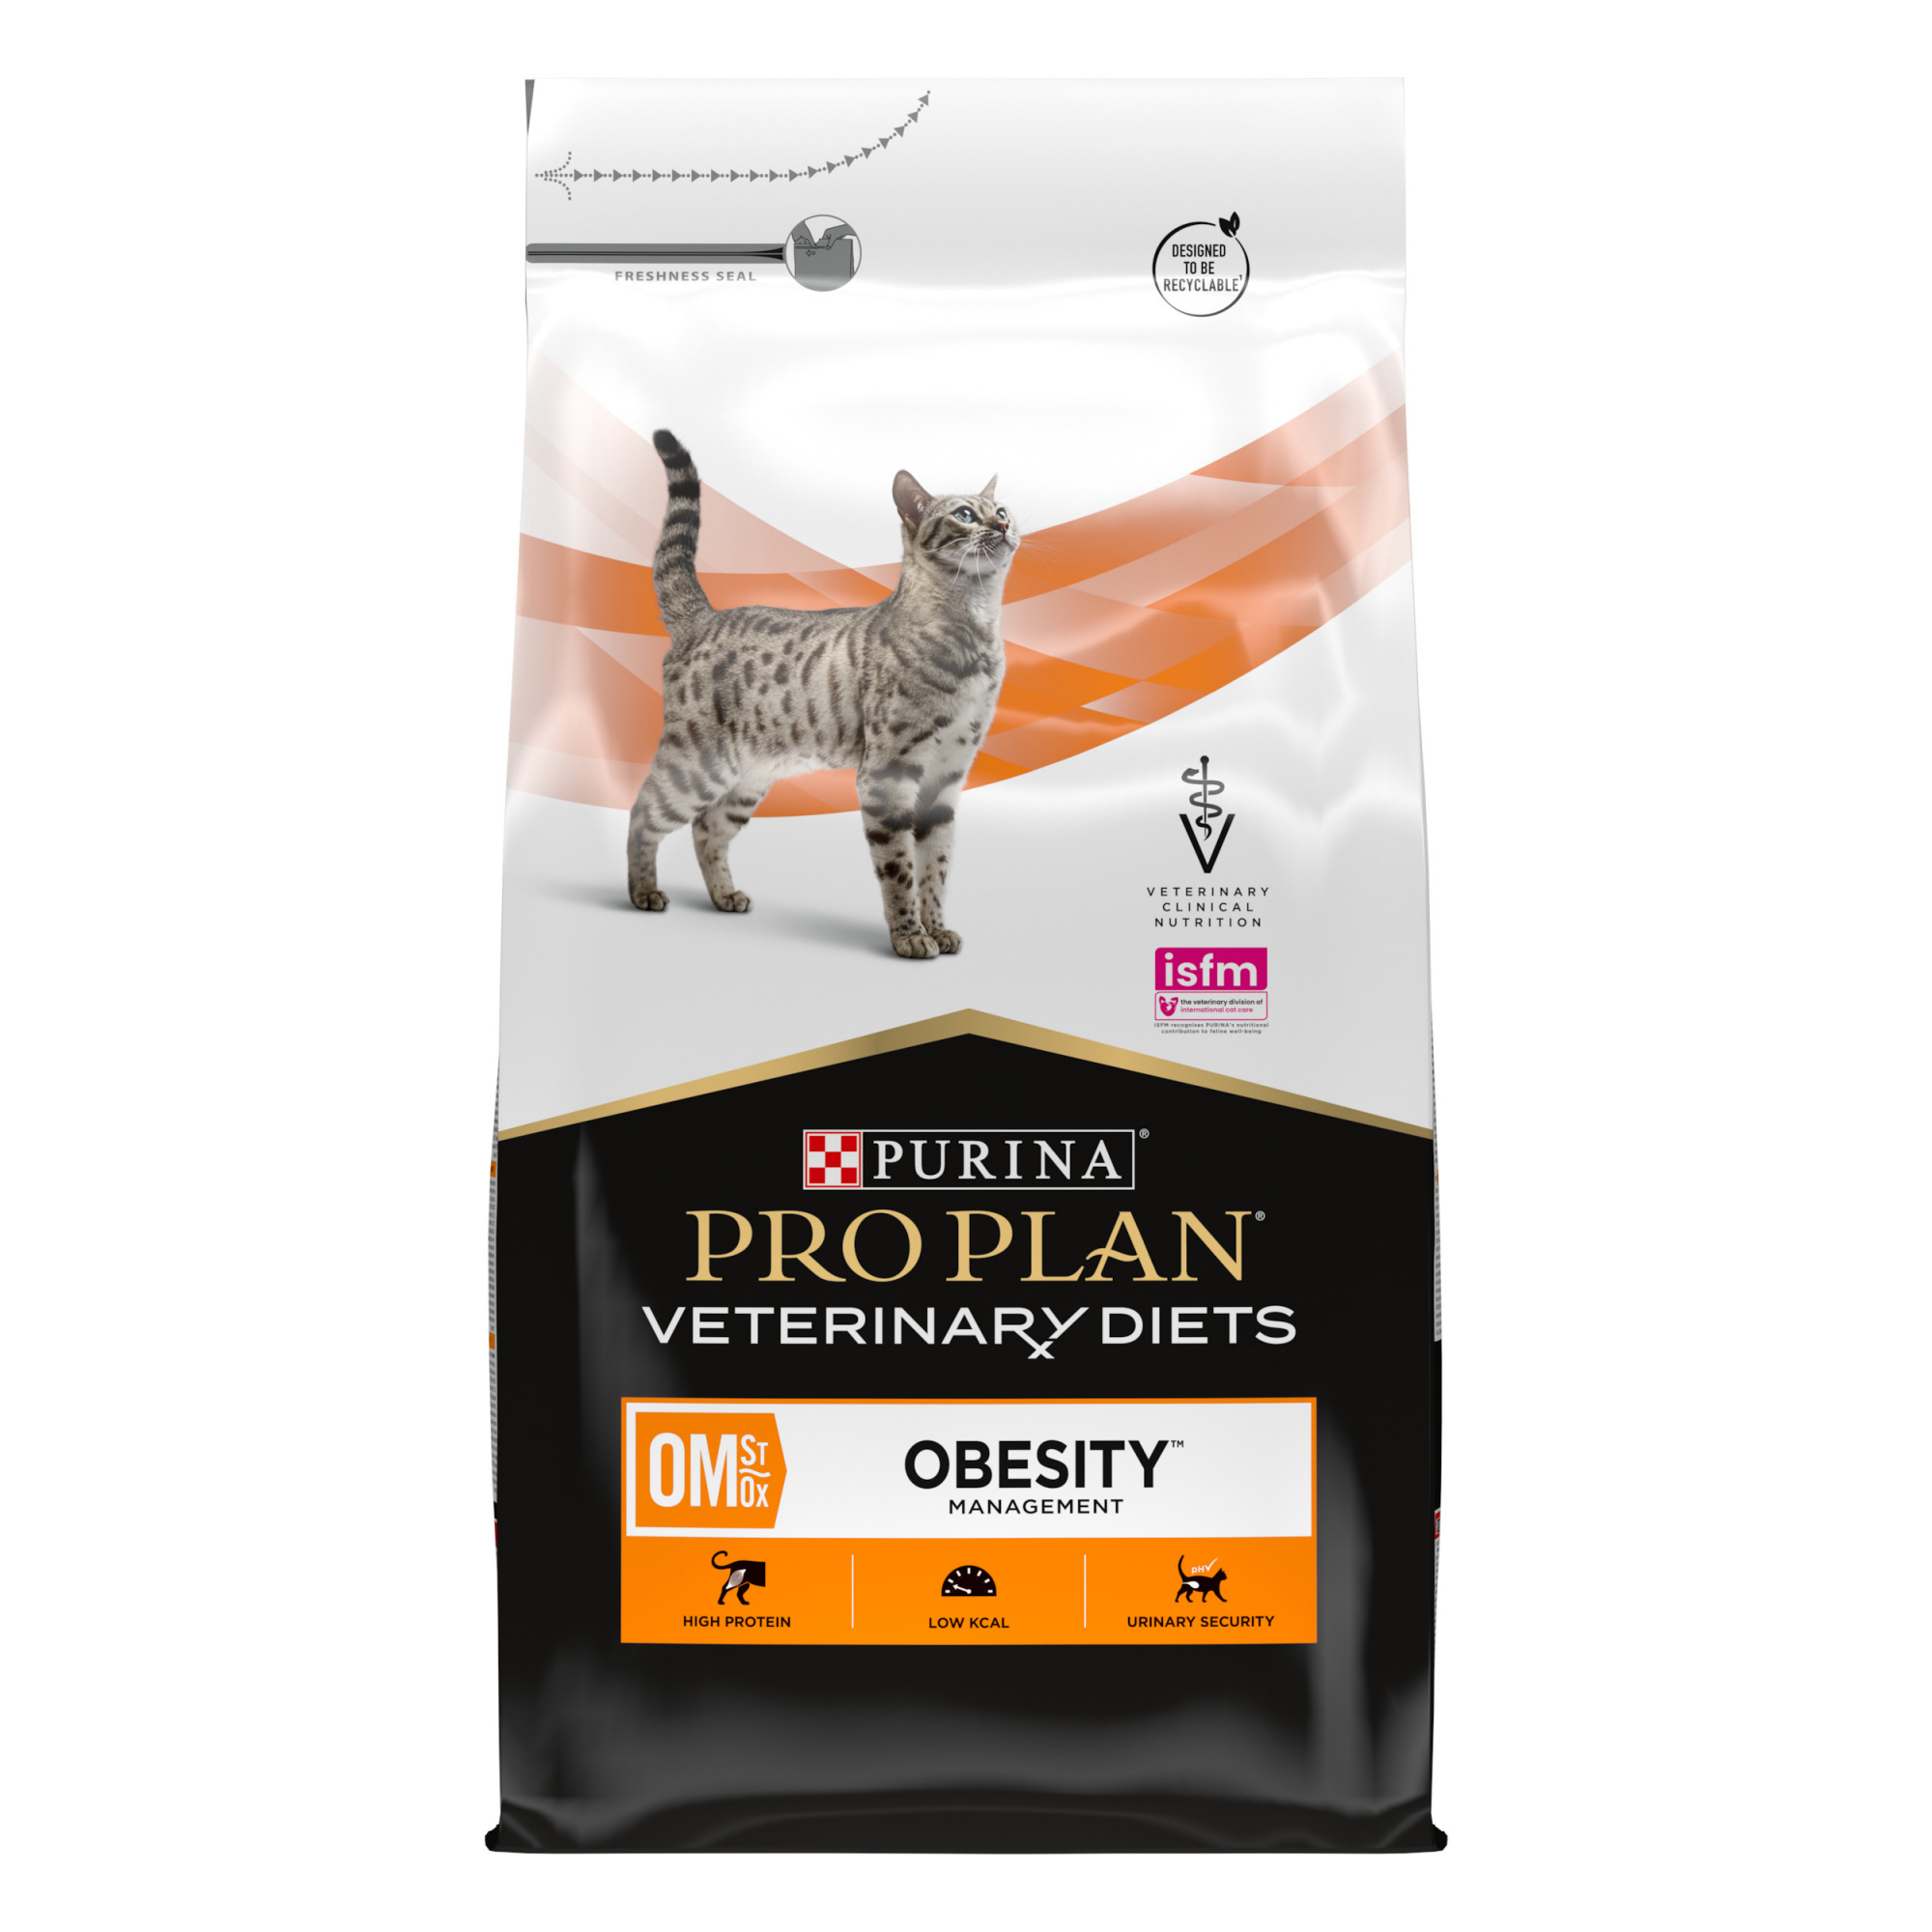 Alimentação veterinária para gato obeso Purina Pro Plan Veterinary Diets Feline OM St/Ox Obesity Management